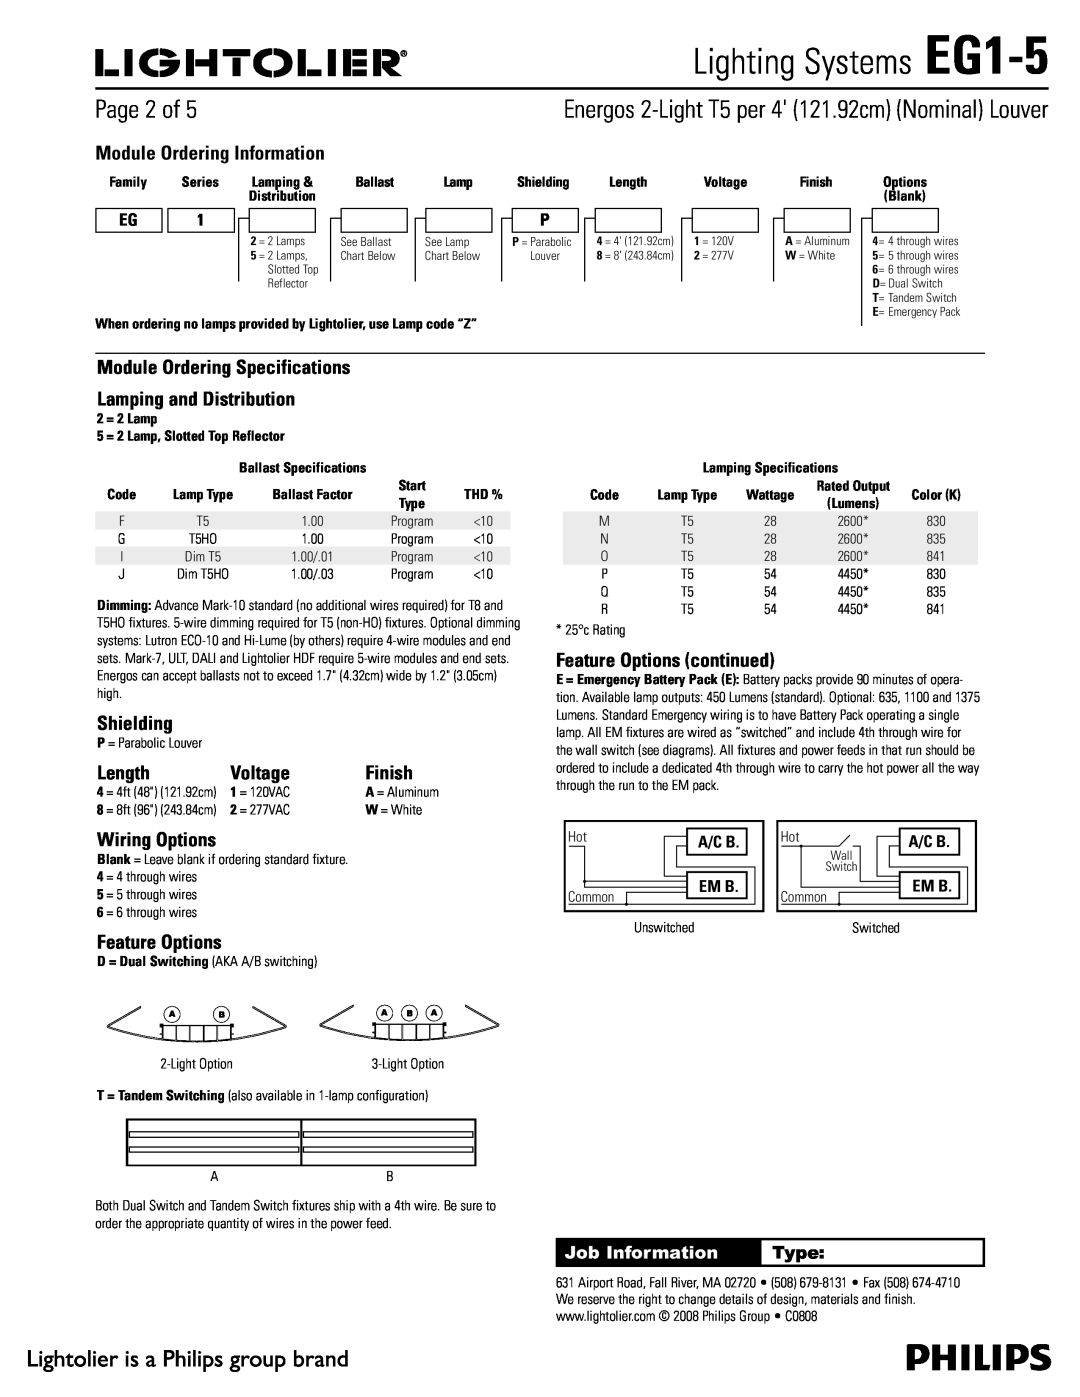 Lightolier specifications 1BHFPG, Lighting Systems EG1-5 